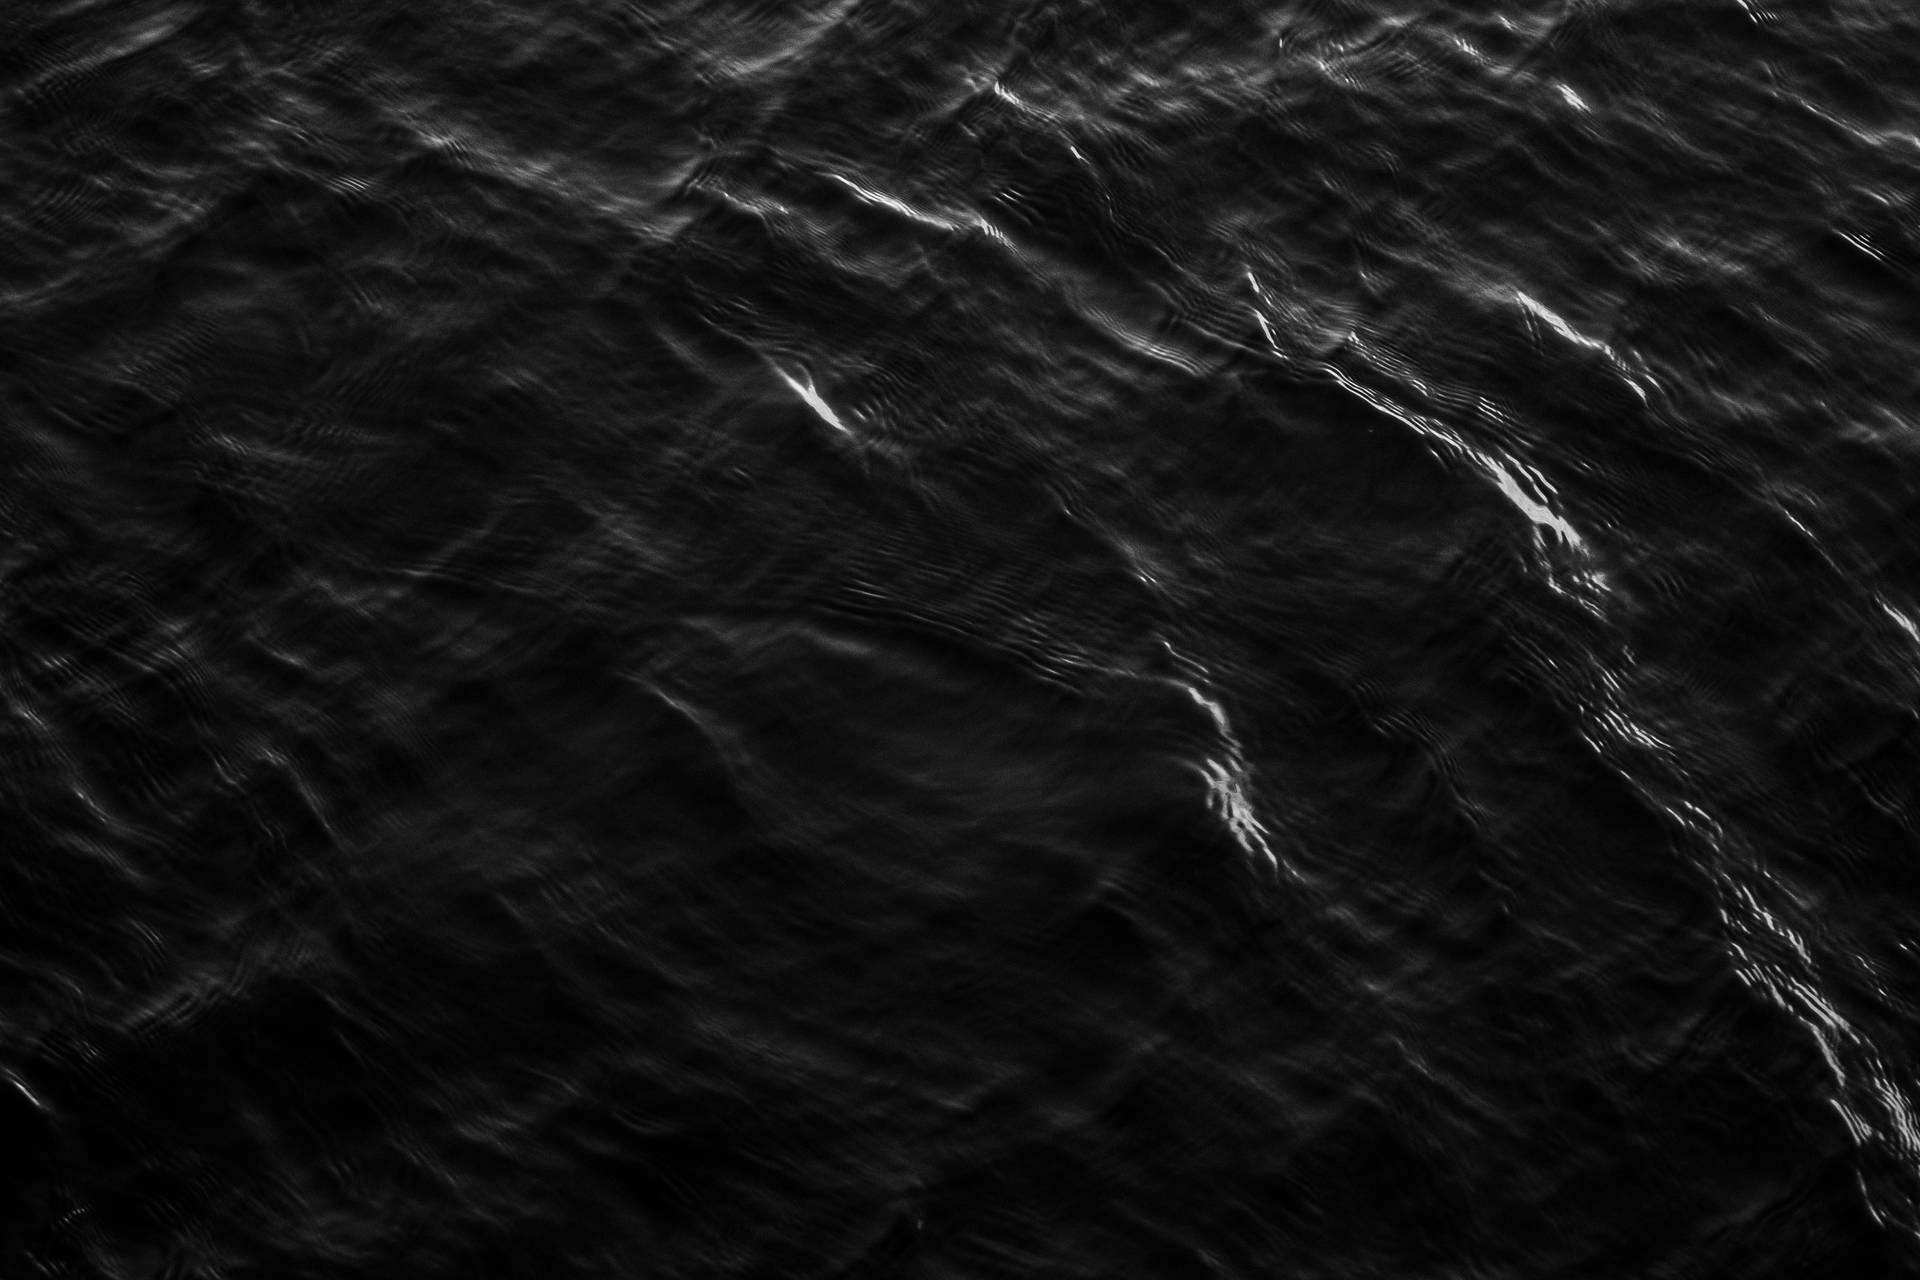 Olasdel Mar Pantalla Negra 4k Fondo de pantalla